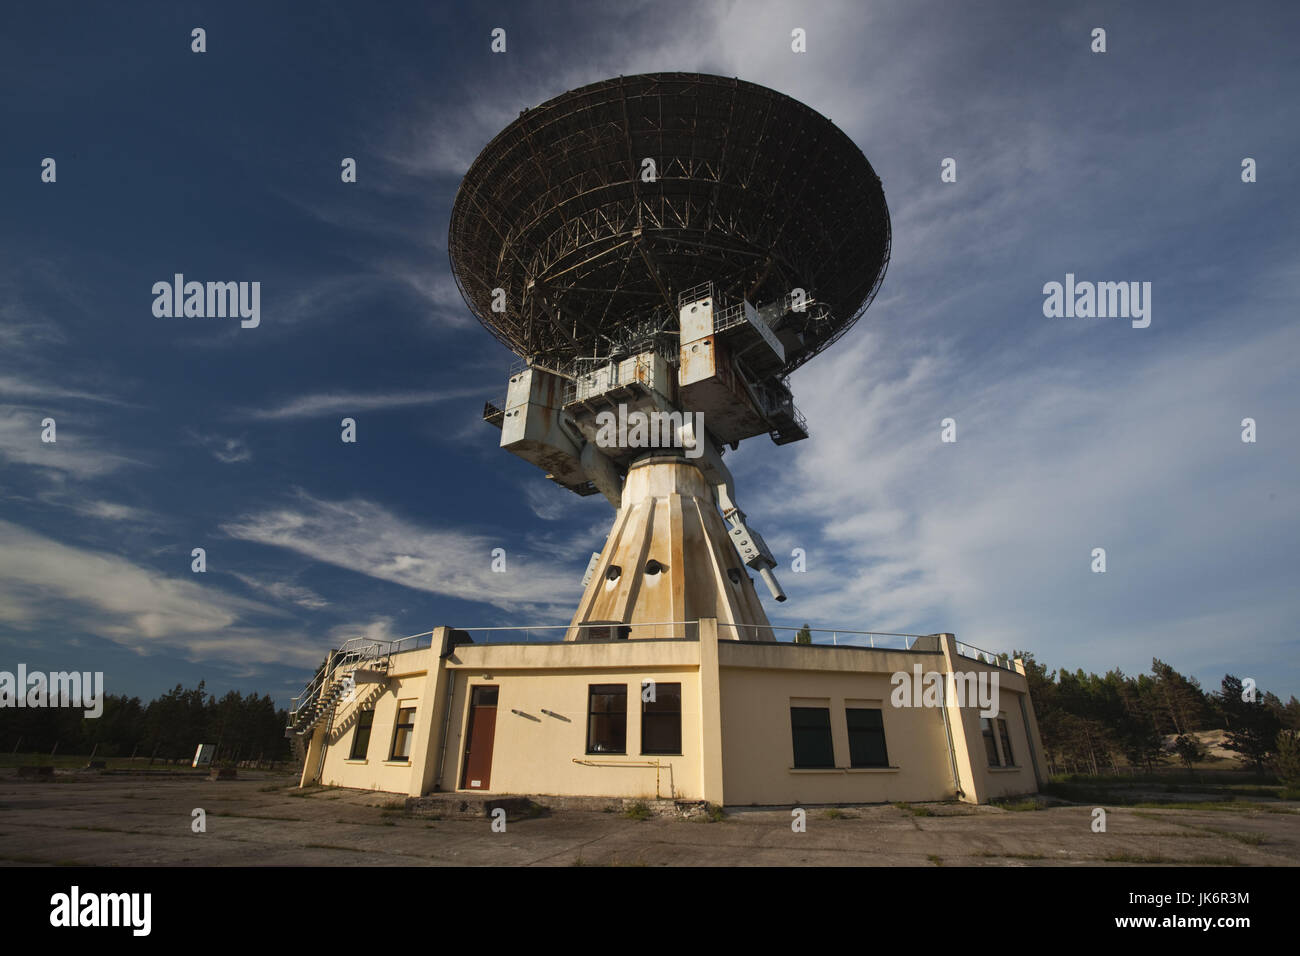 La Lettonie, l'ouest de la Lettonie, Kurzeme Région, Irbene, Ventspils International Radio Astronomy Centre, de l'ère soviétique R-32, 600 tonnes d'espionnage radio telescope Banque D'Images